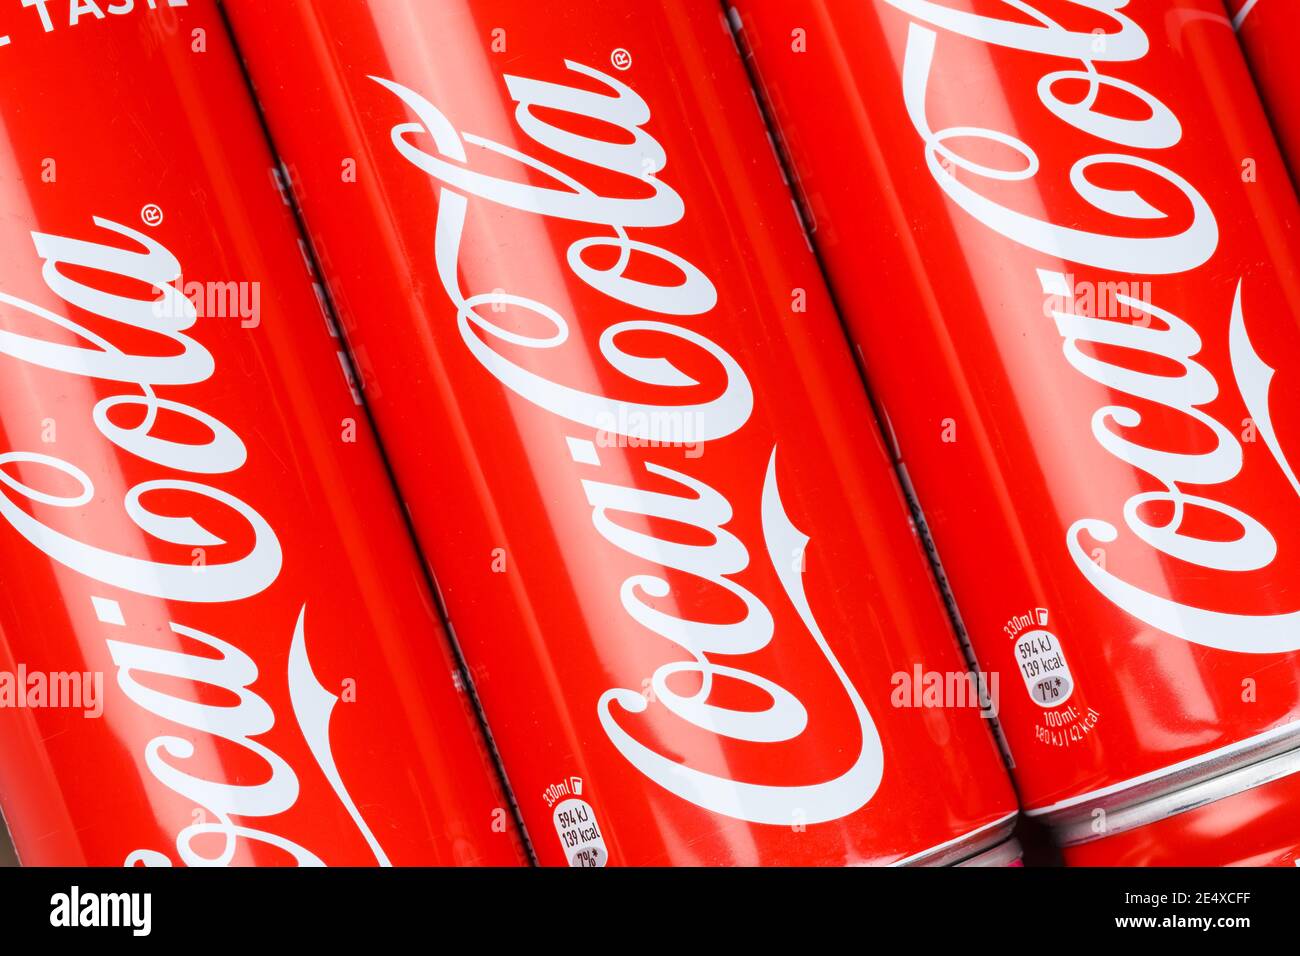 Stoccarda, Germania - 17 gennaio 2021: Bevanda analcolica con logo Coca Cola-Cola in background a Stoccarda in Germania. Foto Stock